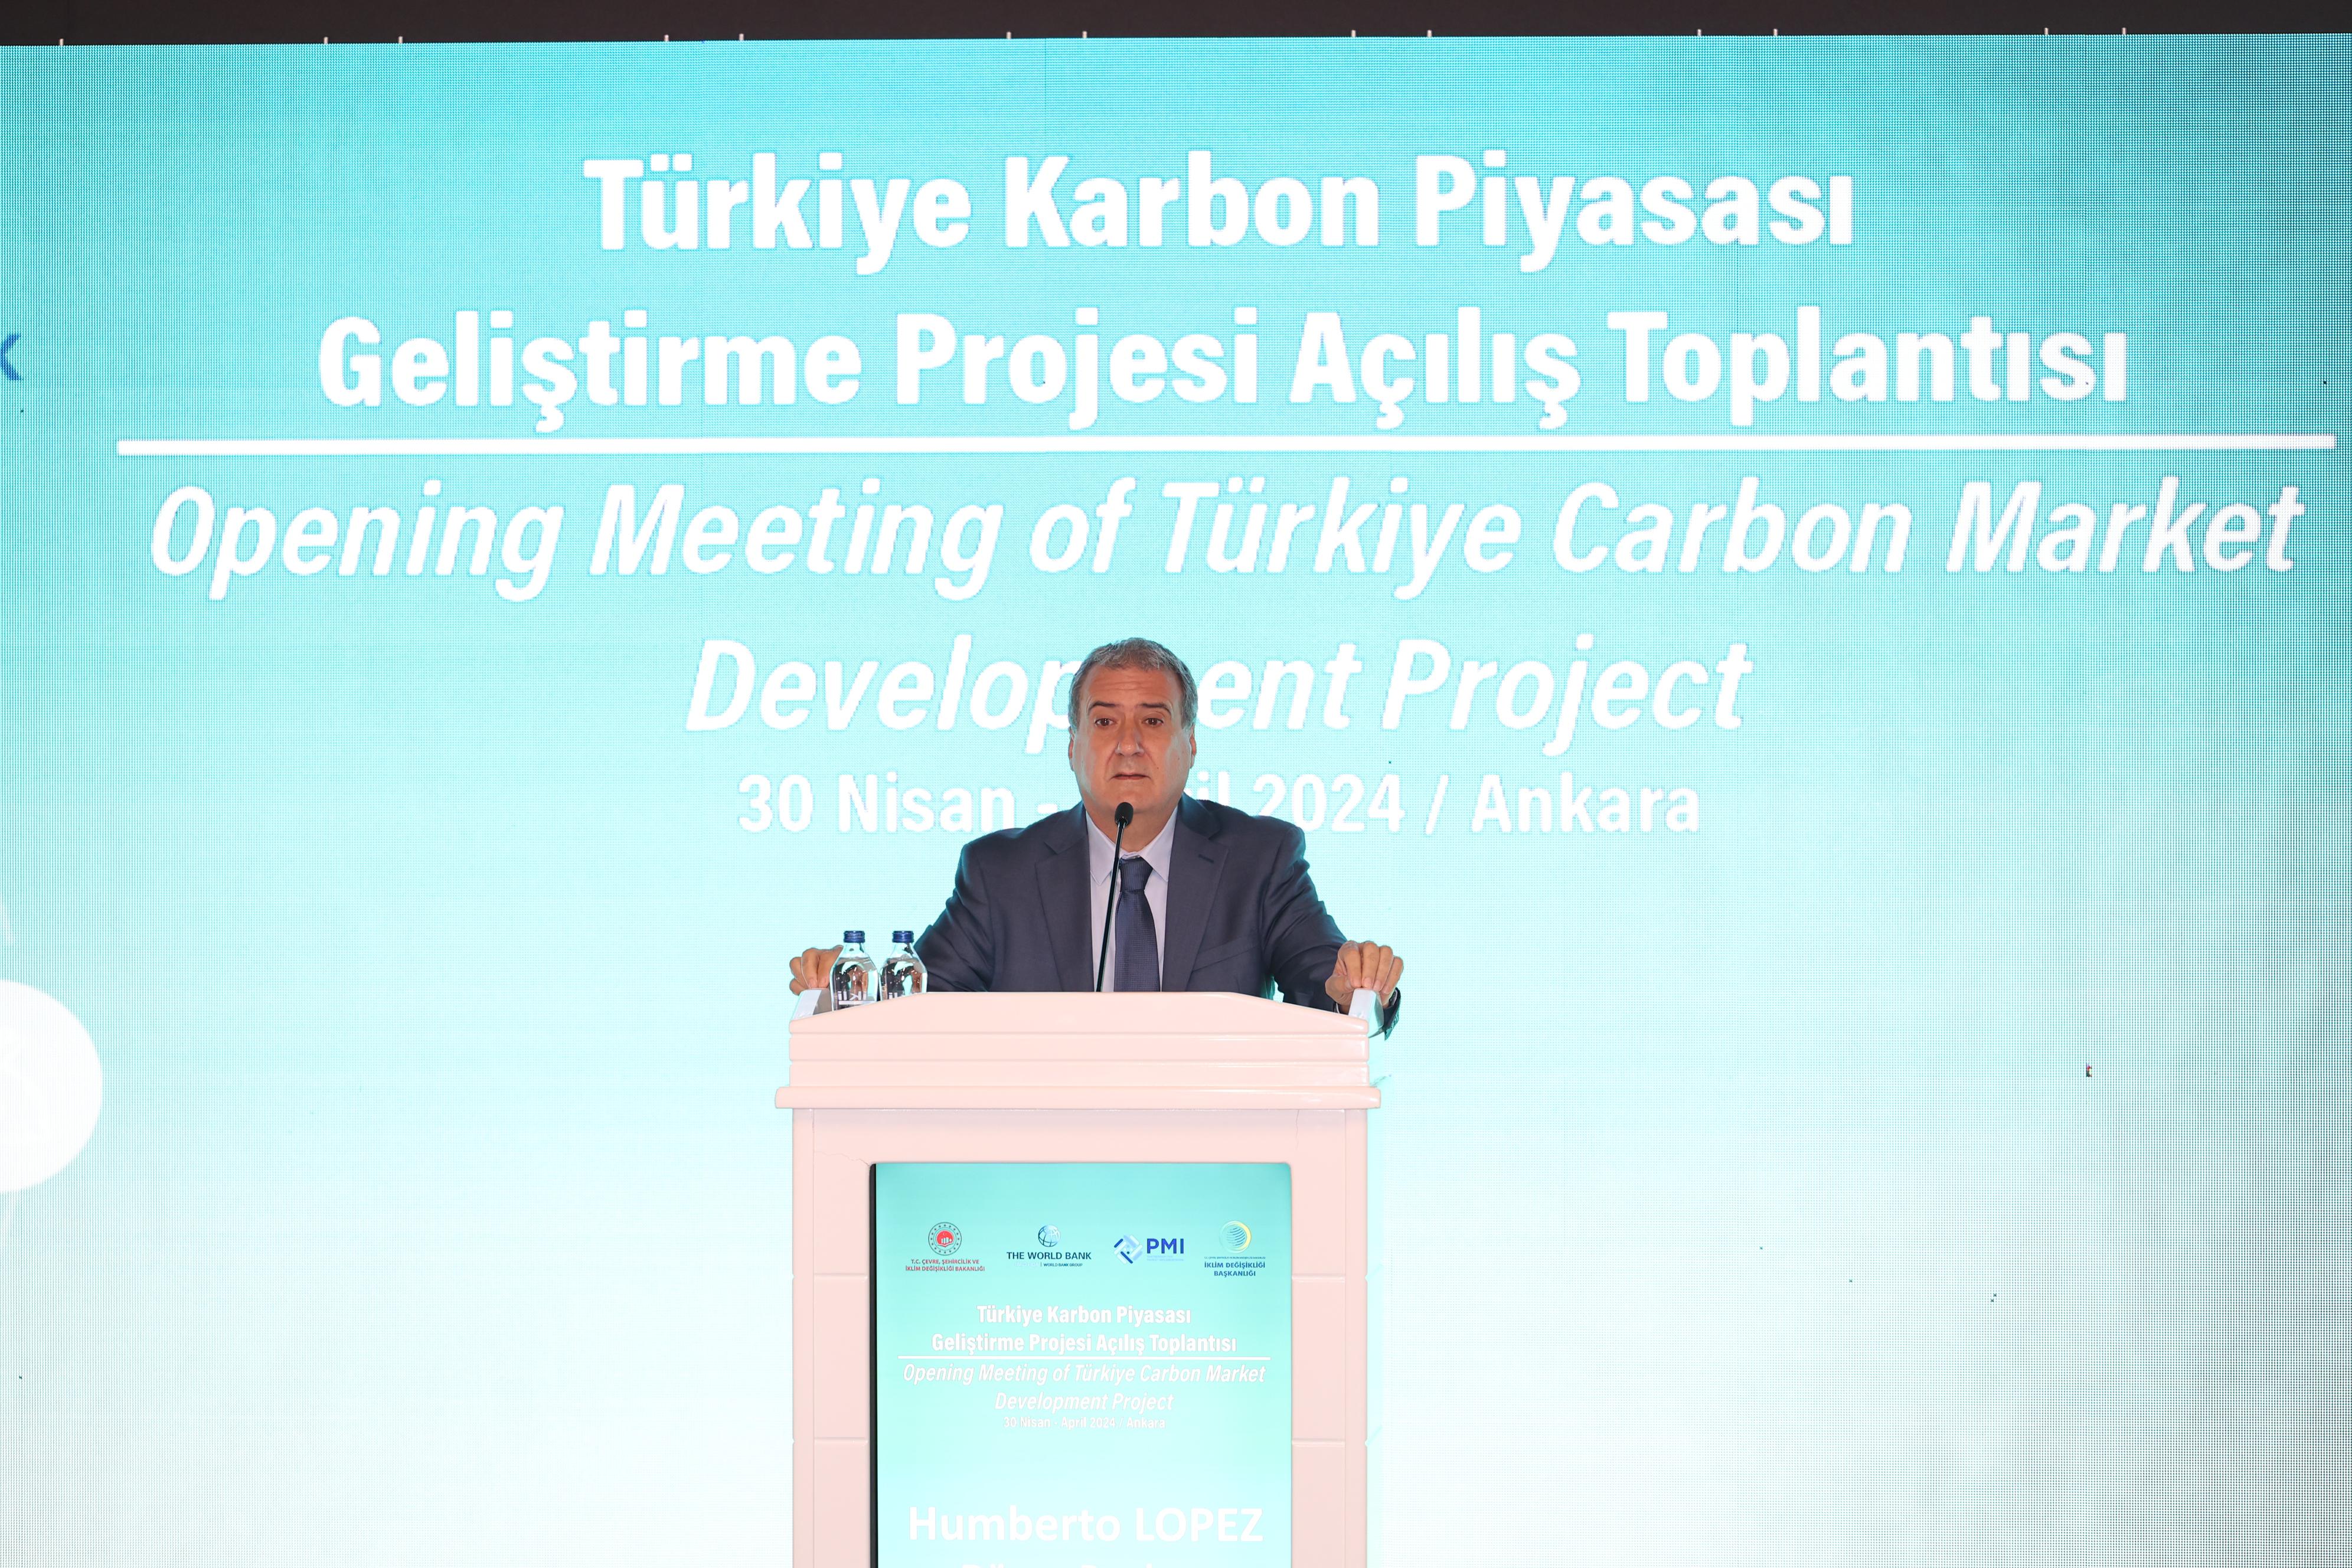 Türkiye Karbon Piyasası Geliştirme Projesi Açılışı T.C. Çevre, Şehircilik ve İklim Değişikliği Bakanı Mehmet Özhaseki tarafından gerçekleştirildi